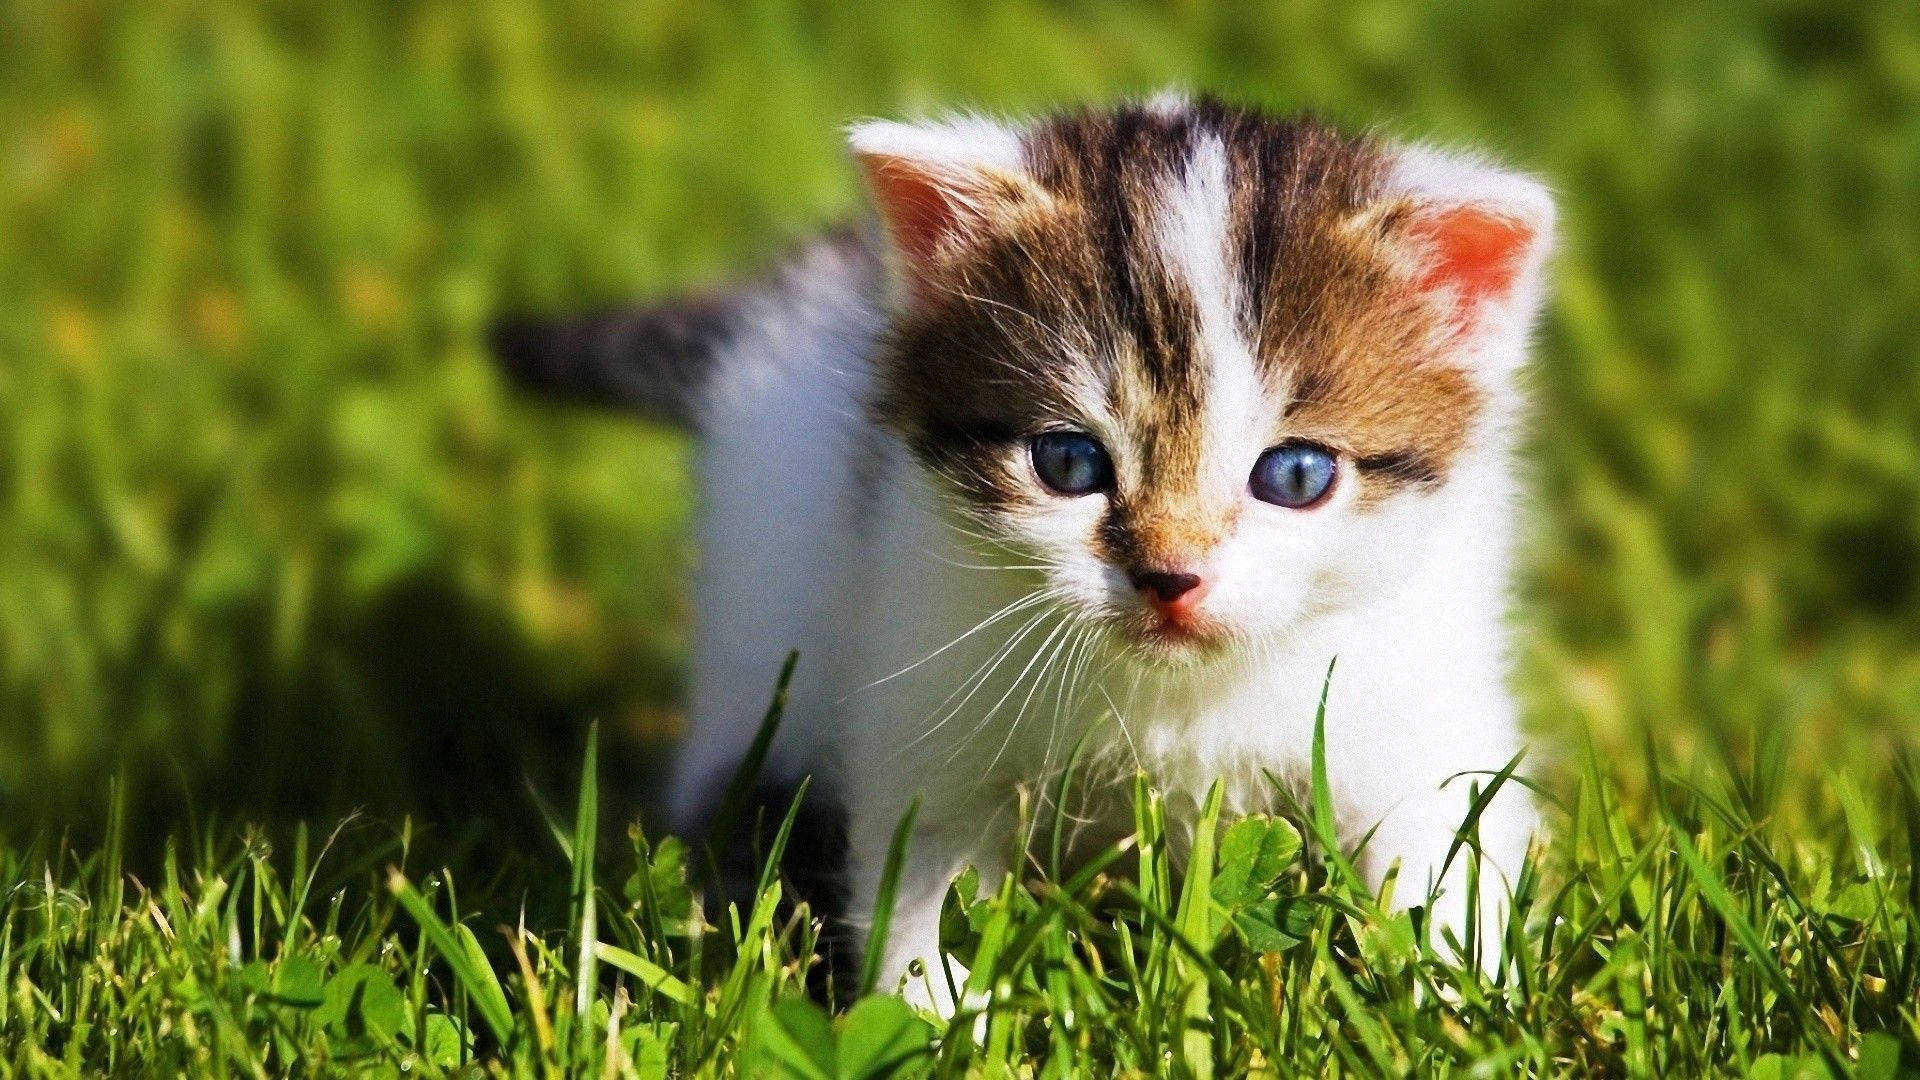 Baby Kitten Animal Playing In Grass